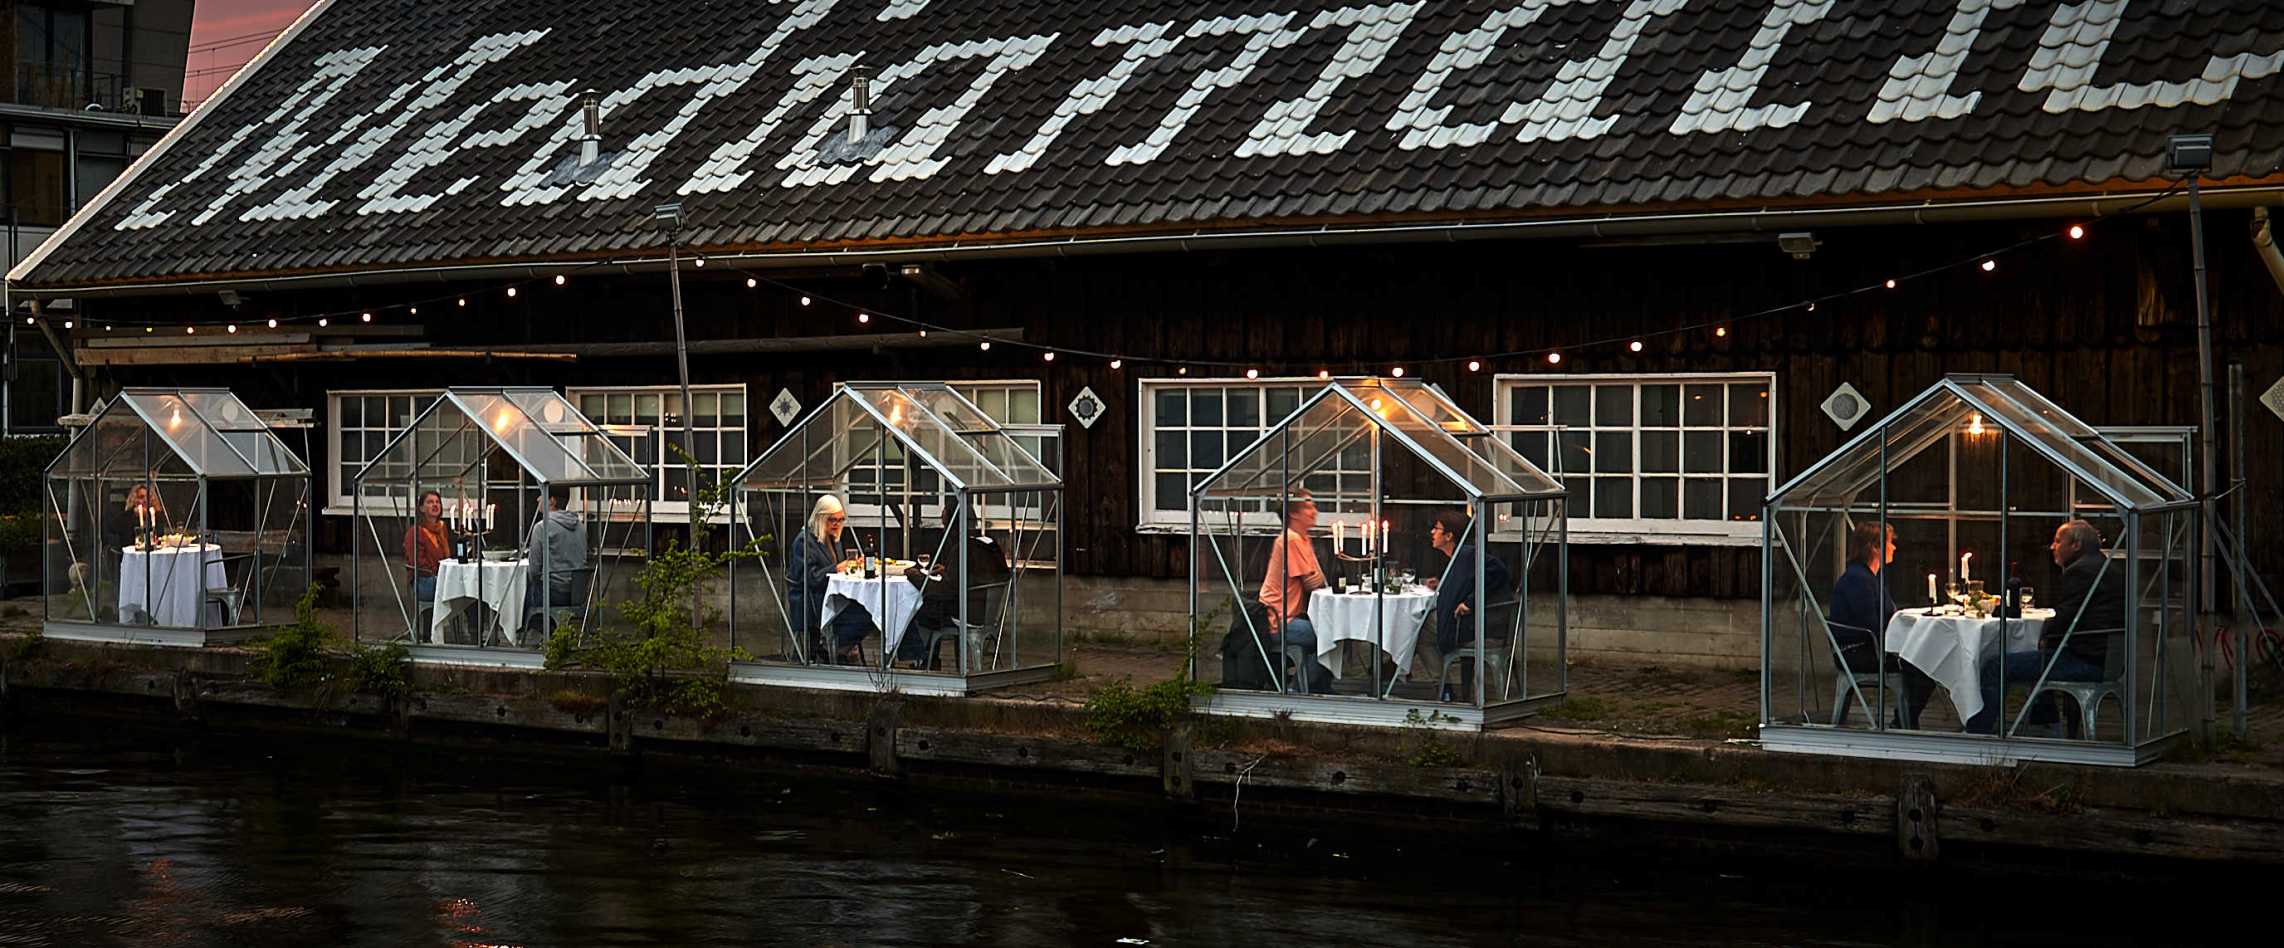 مطعم ميدياماتيك بيوتوب في أمستردام يستقبل زبائنه مجدداً في كبائن زجاجية منعزلة